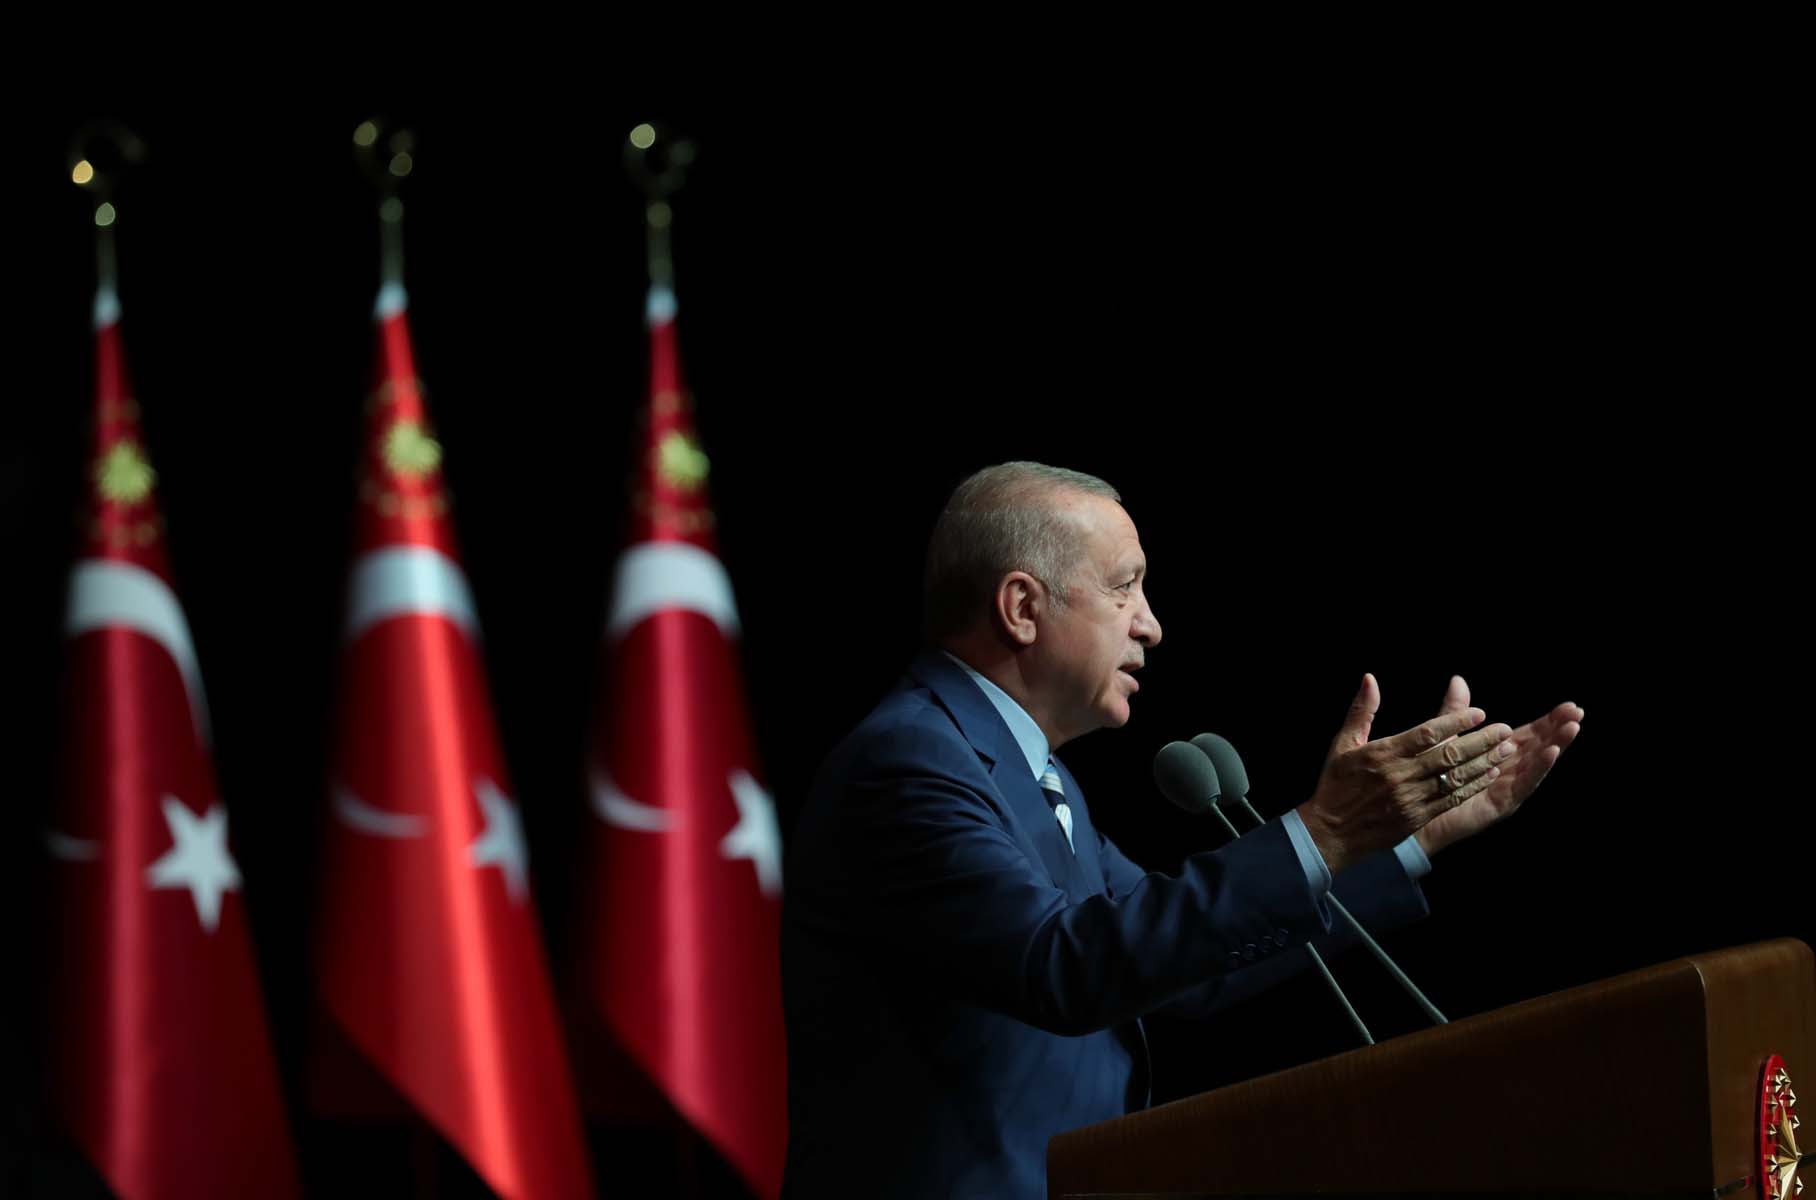 Son dakika | Cumhurbaşkanı Erdoğan'dan cuma namazı çıkışı önemli açıklamalar! ABD’nin bu yanlışını kabul edemeyiz